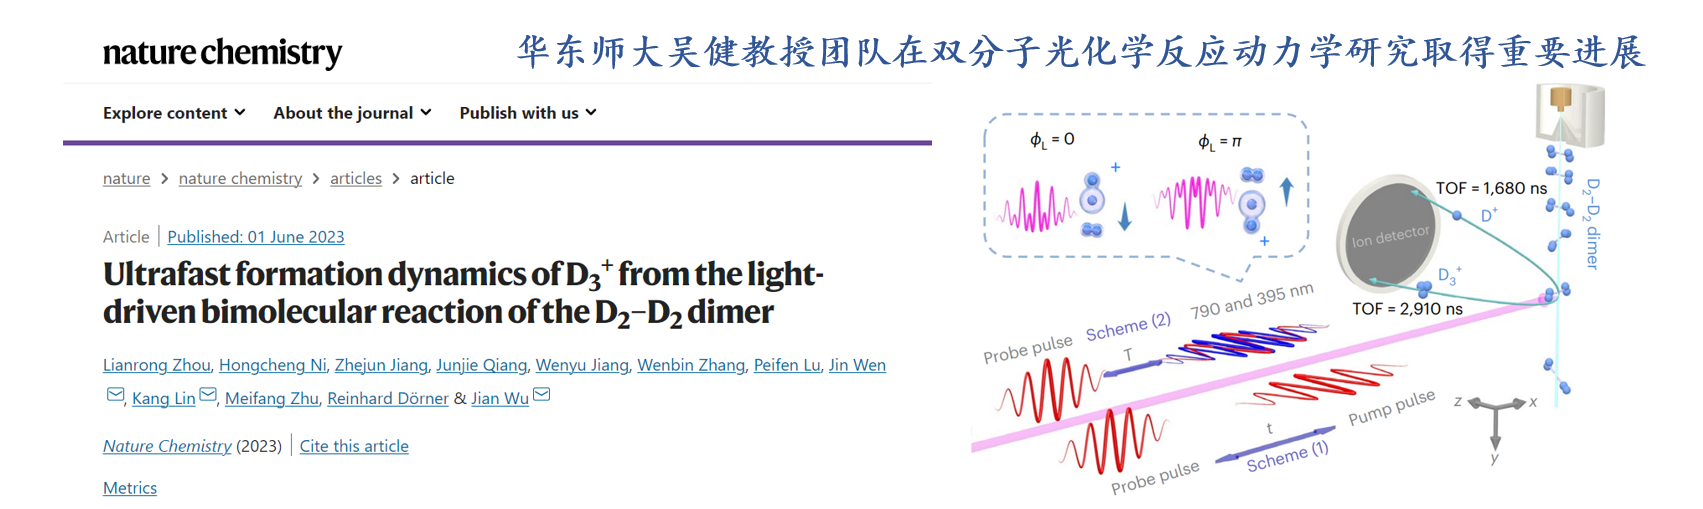 华东师大吴健教授团队在双分子光化学反应动力学研究取得重要进展